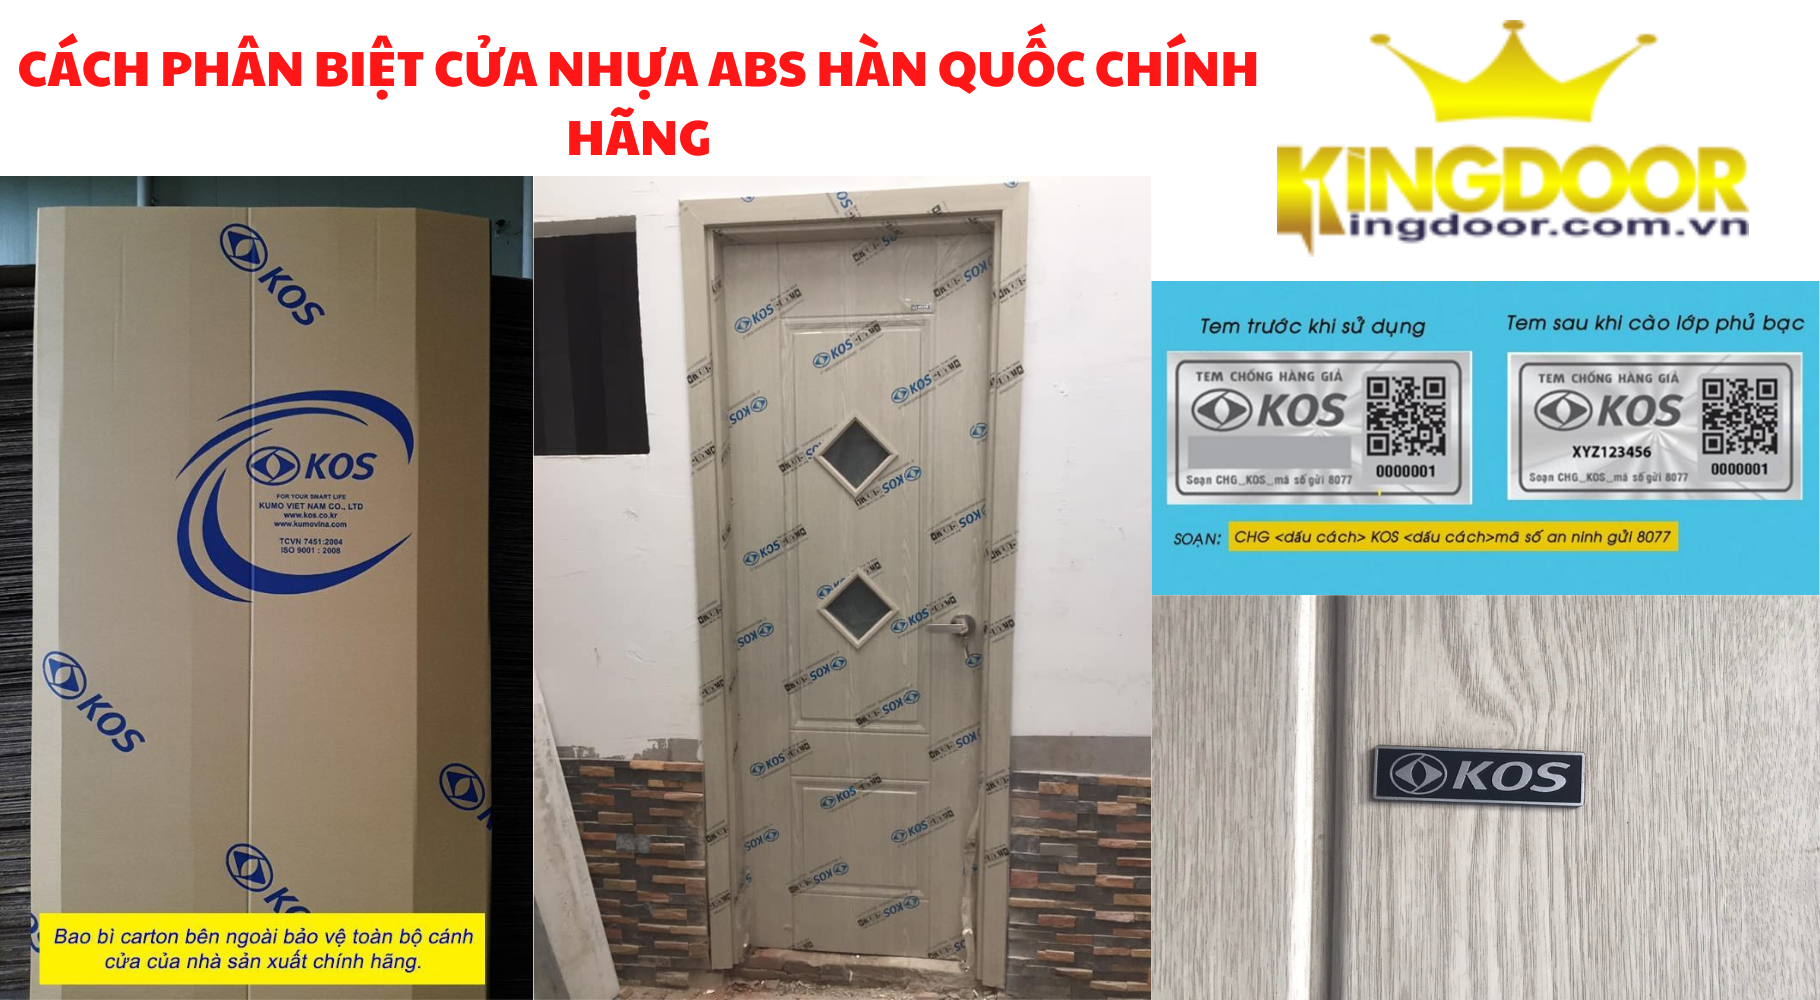 Cách nhận biết cửa nhựa giả gỗ ABS Hàn Quốc chính hãng do Kingdoor cung cấp ra thị trường.